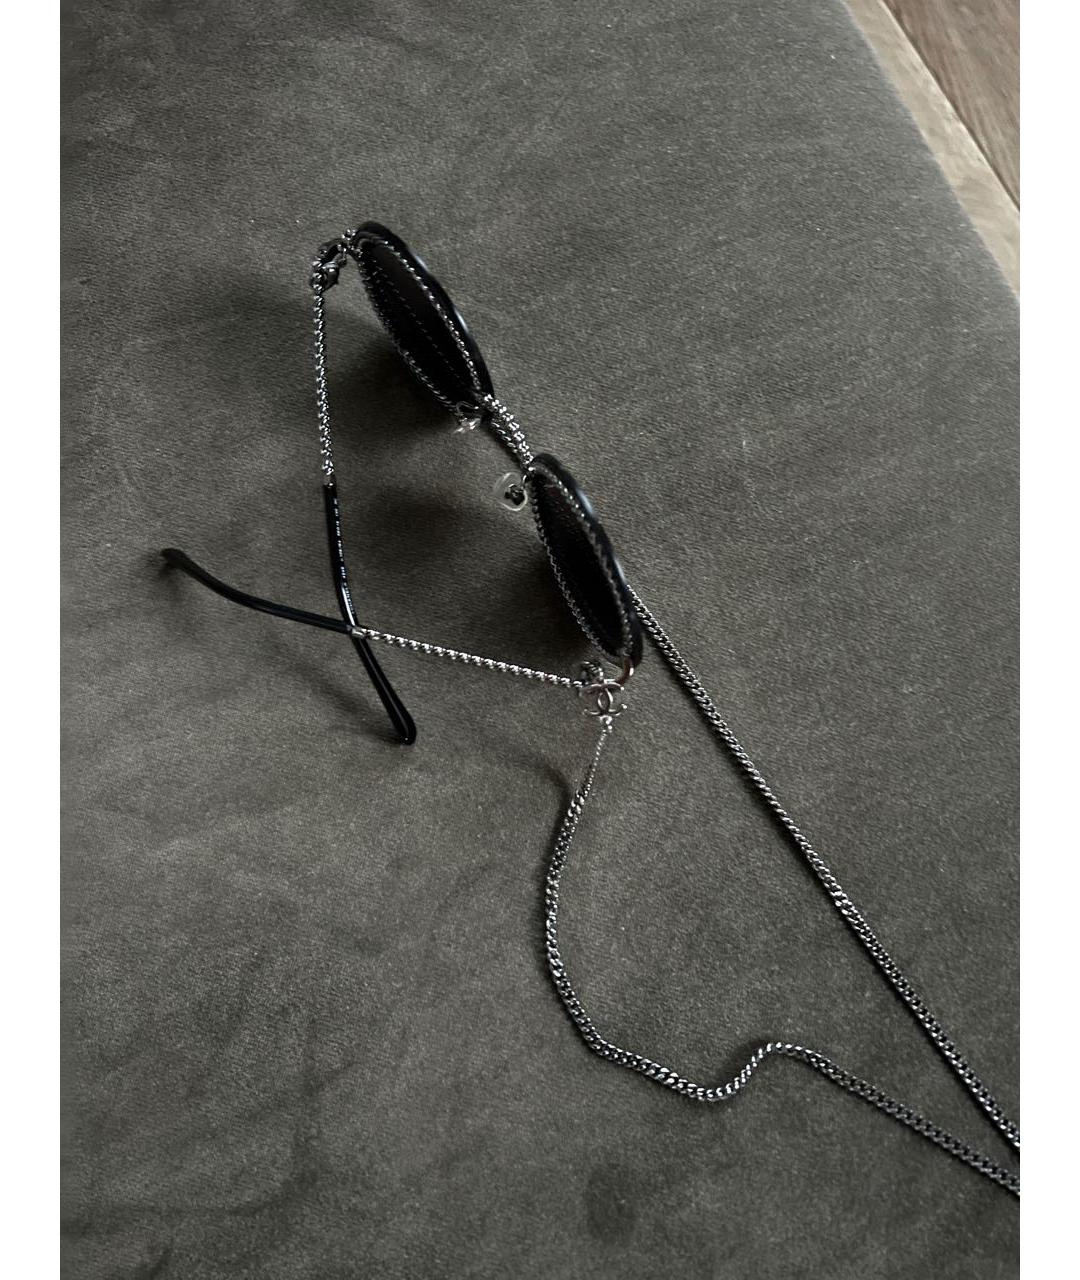 CHANEL PRE-OWNED Черные металлические солнцезащитные очки, фото 2